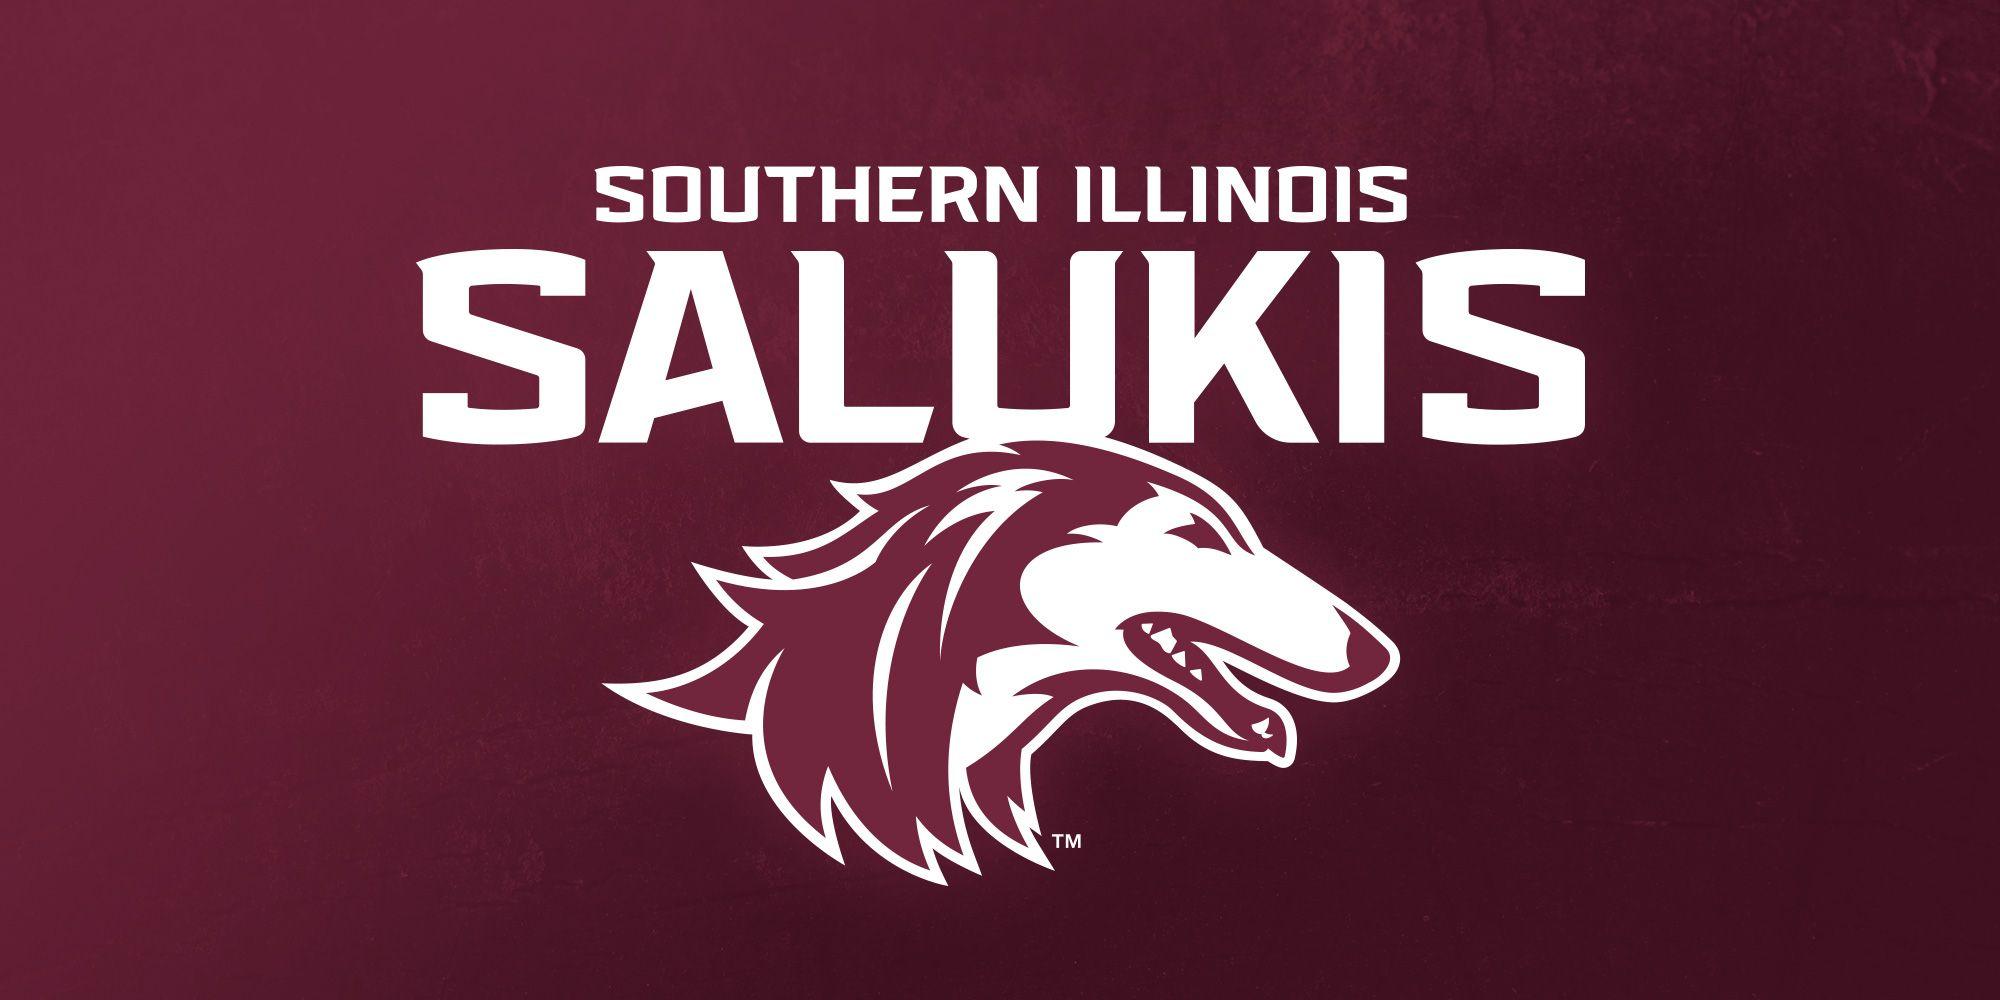 Siu Logo - Saluki Athletics unveils new logo Illinois University